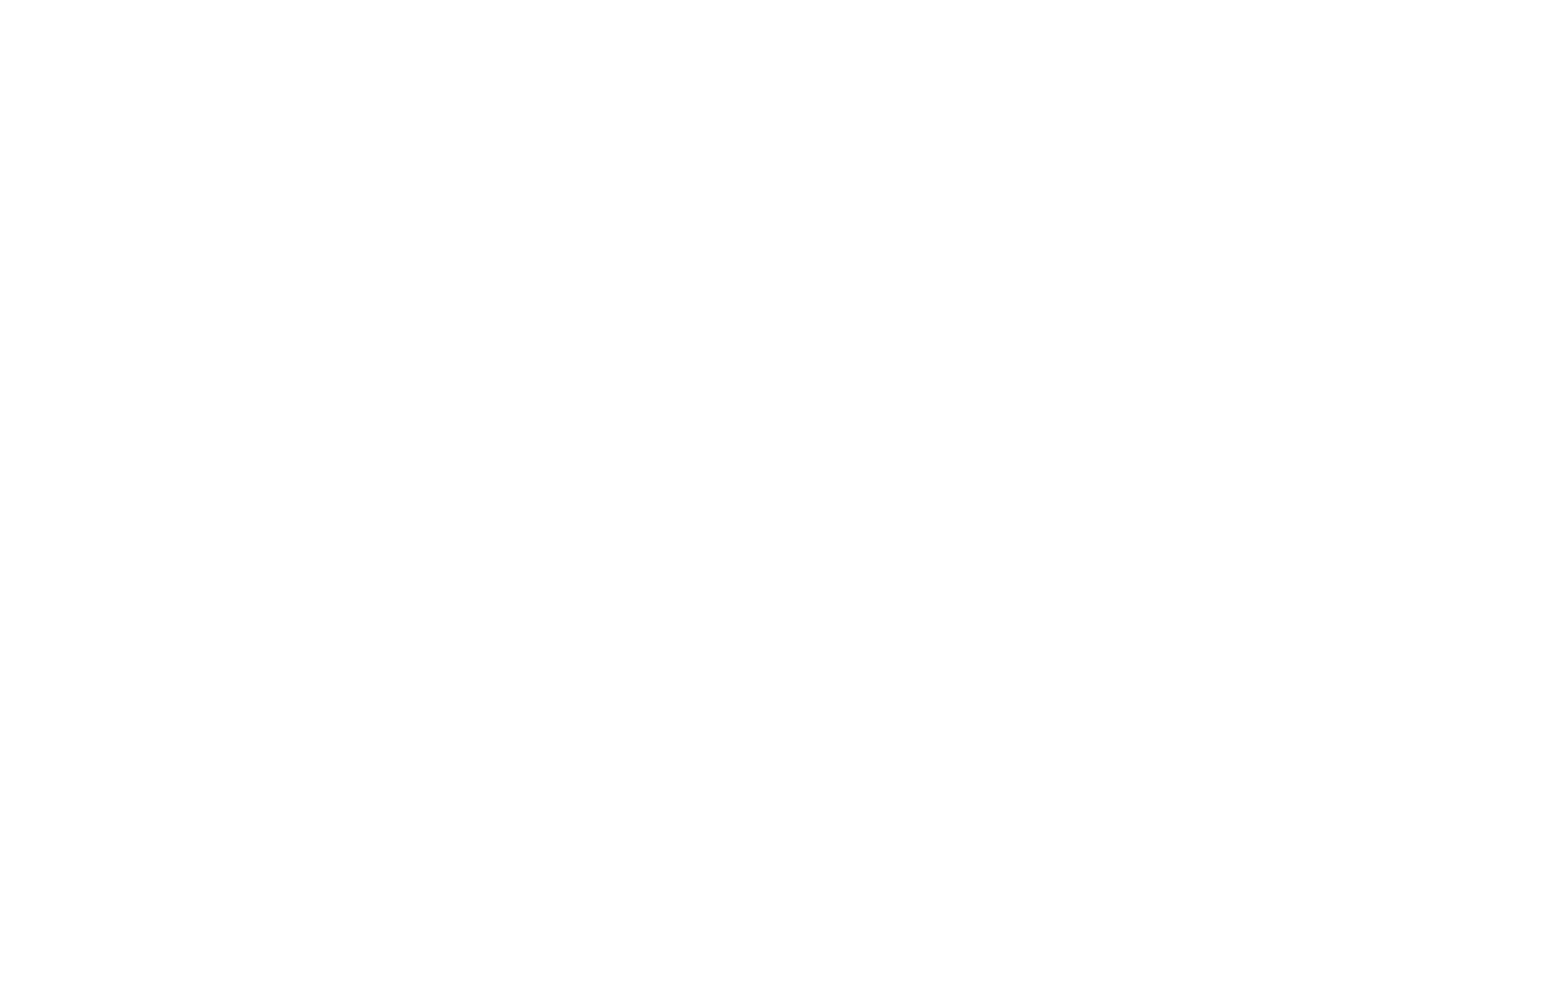 Написание логотипа - Брендбук производителя тюбингов Baboom